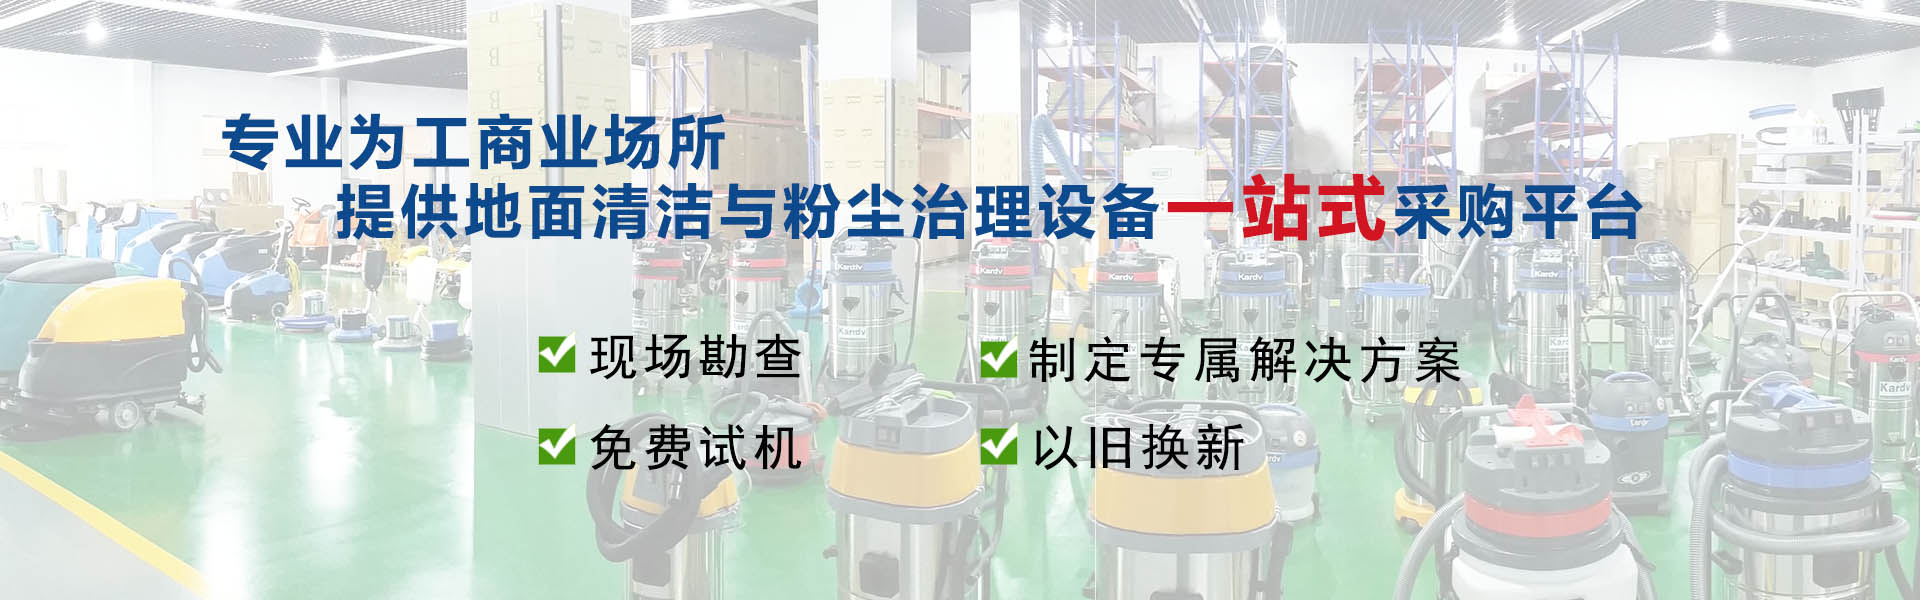 青岛艾隆吸尘器厂家提供专业的工业级吸尘器_除尘设备_工业用吸尘器_工业吸尘机等产品,价格优惠